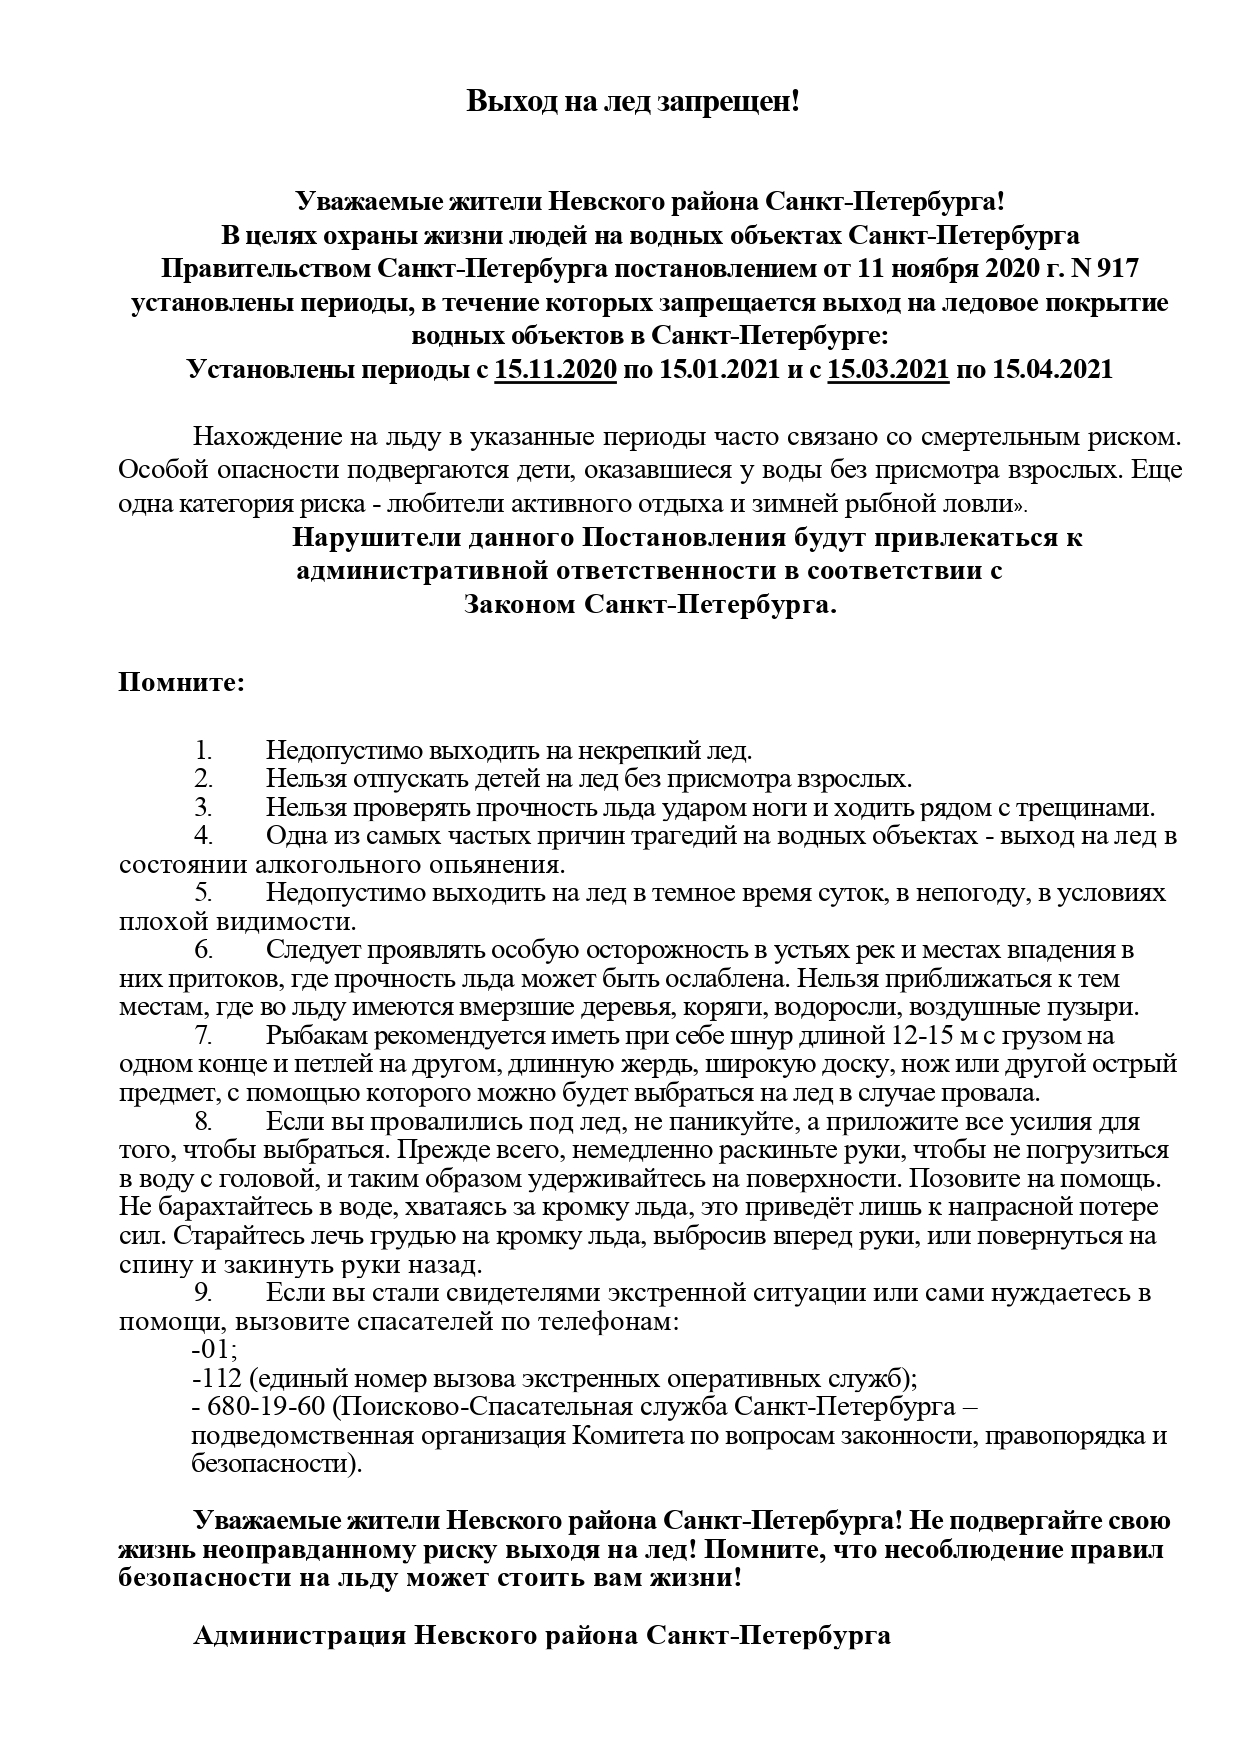 Pamyatka led 917 30.12.2020 page 0001 1